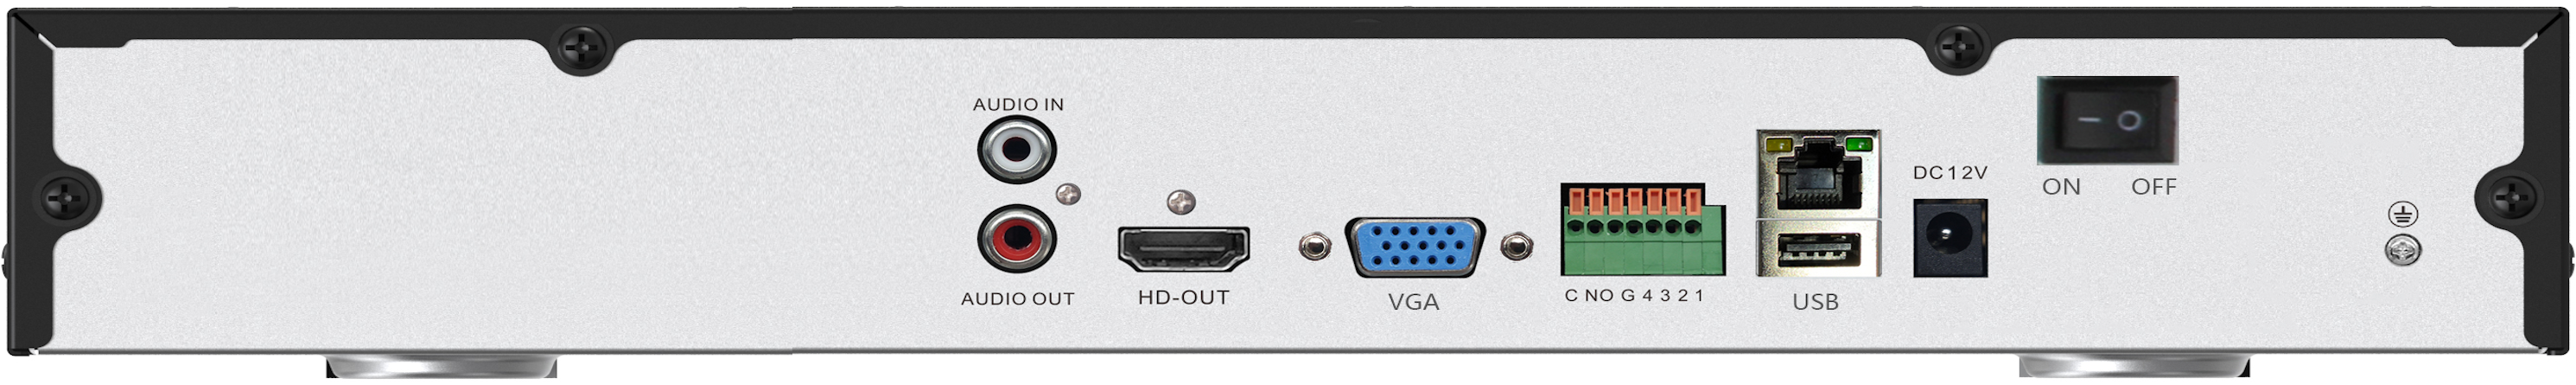 IP видеорегистратор 32 канала, Н.265(+)/264(+) (аудио G.711/AAC), разрешение до 12M(4000x3000), вх.поток до 320Мб, VGA@1080P/HDMl@4K, ONVIF S(T), Р2Р Bitvision, аудио RCA вход/выход, трев.вход/выход – 4/1, 1*USB 2.0/1*USB 3.0, SATA 2*10Тб, RJ45 1000M